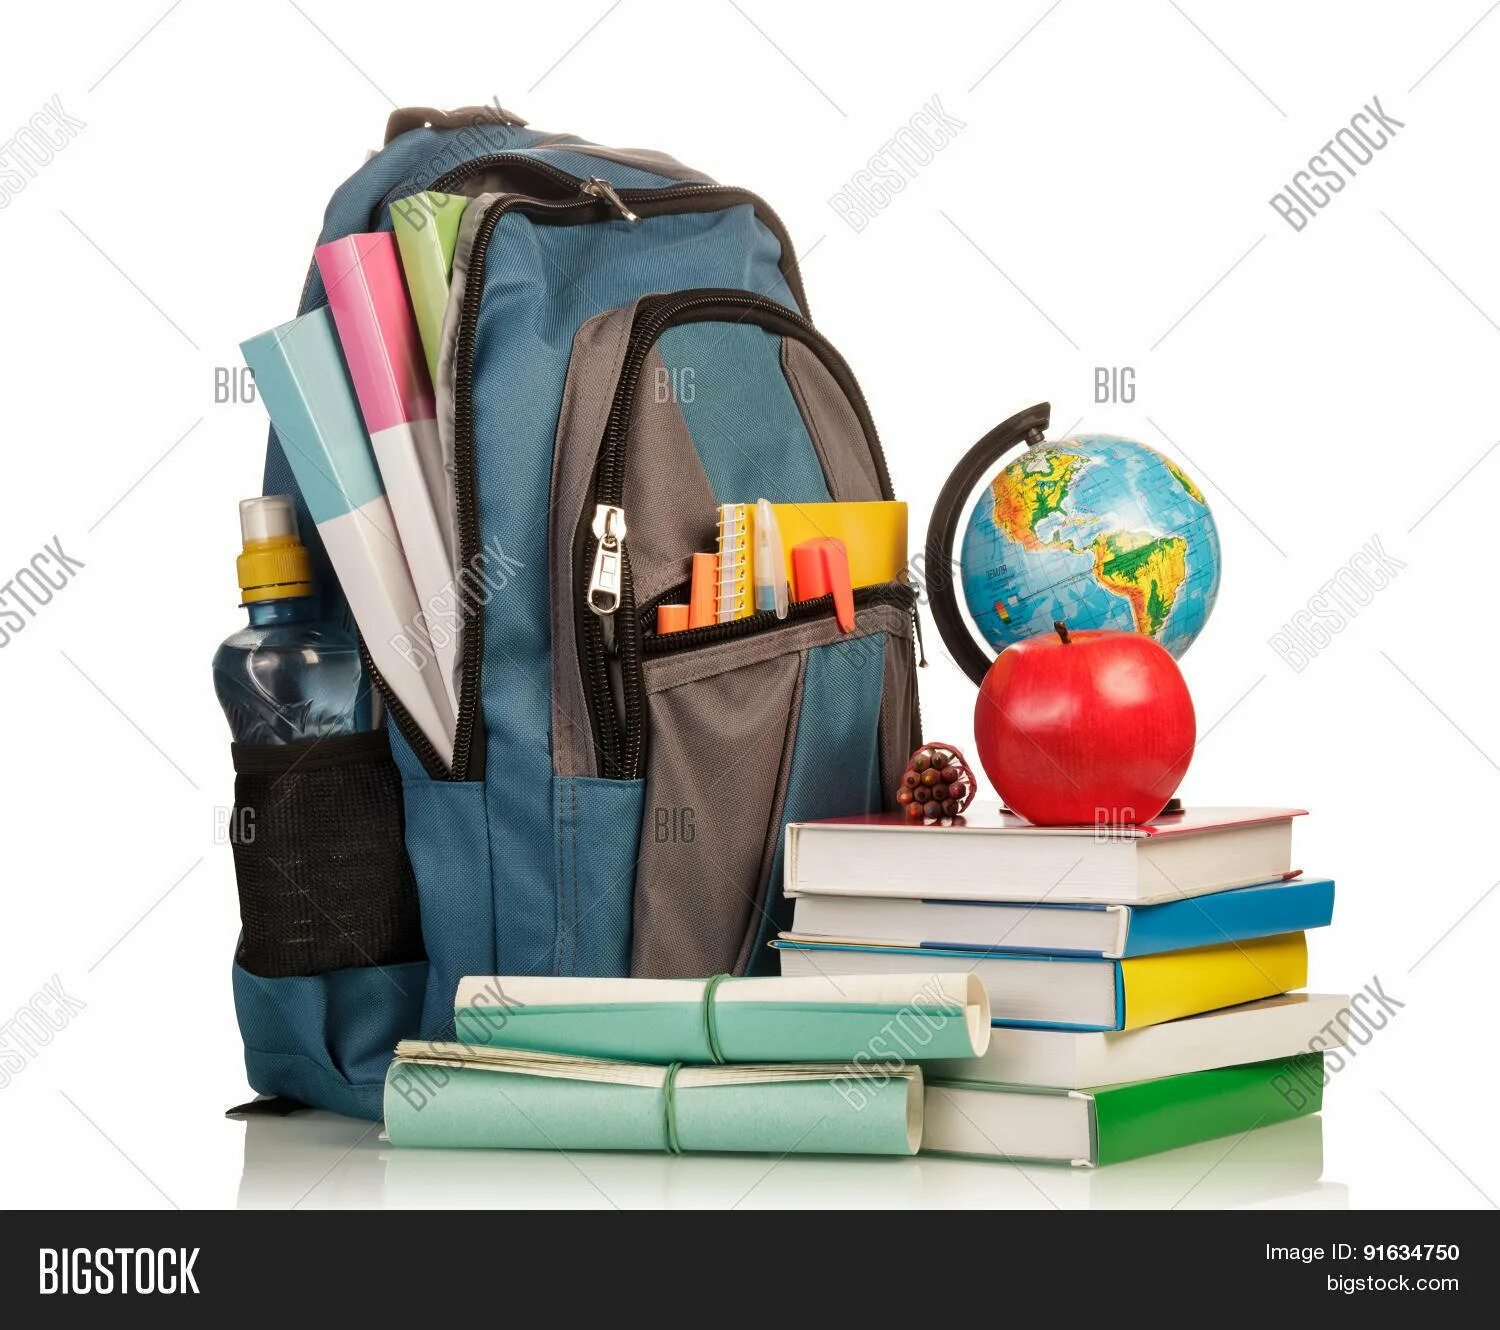 Рюкзак со школьными принадлежностями. Школьник с рюкзаком. Школьный рюкзак с учебниками. Портфель с канцтоварами. Портфель с учебниками